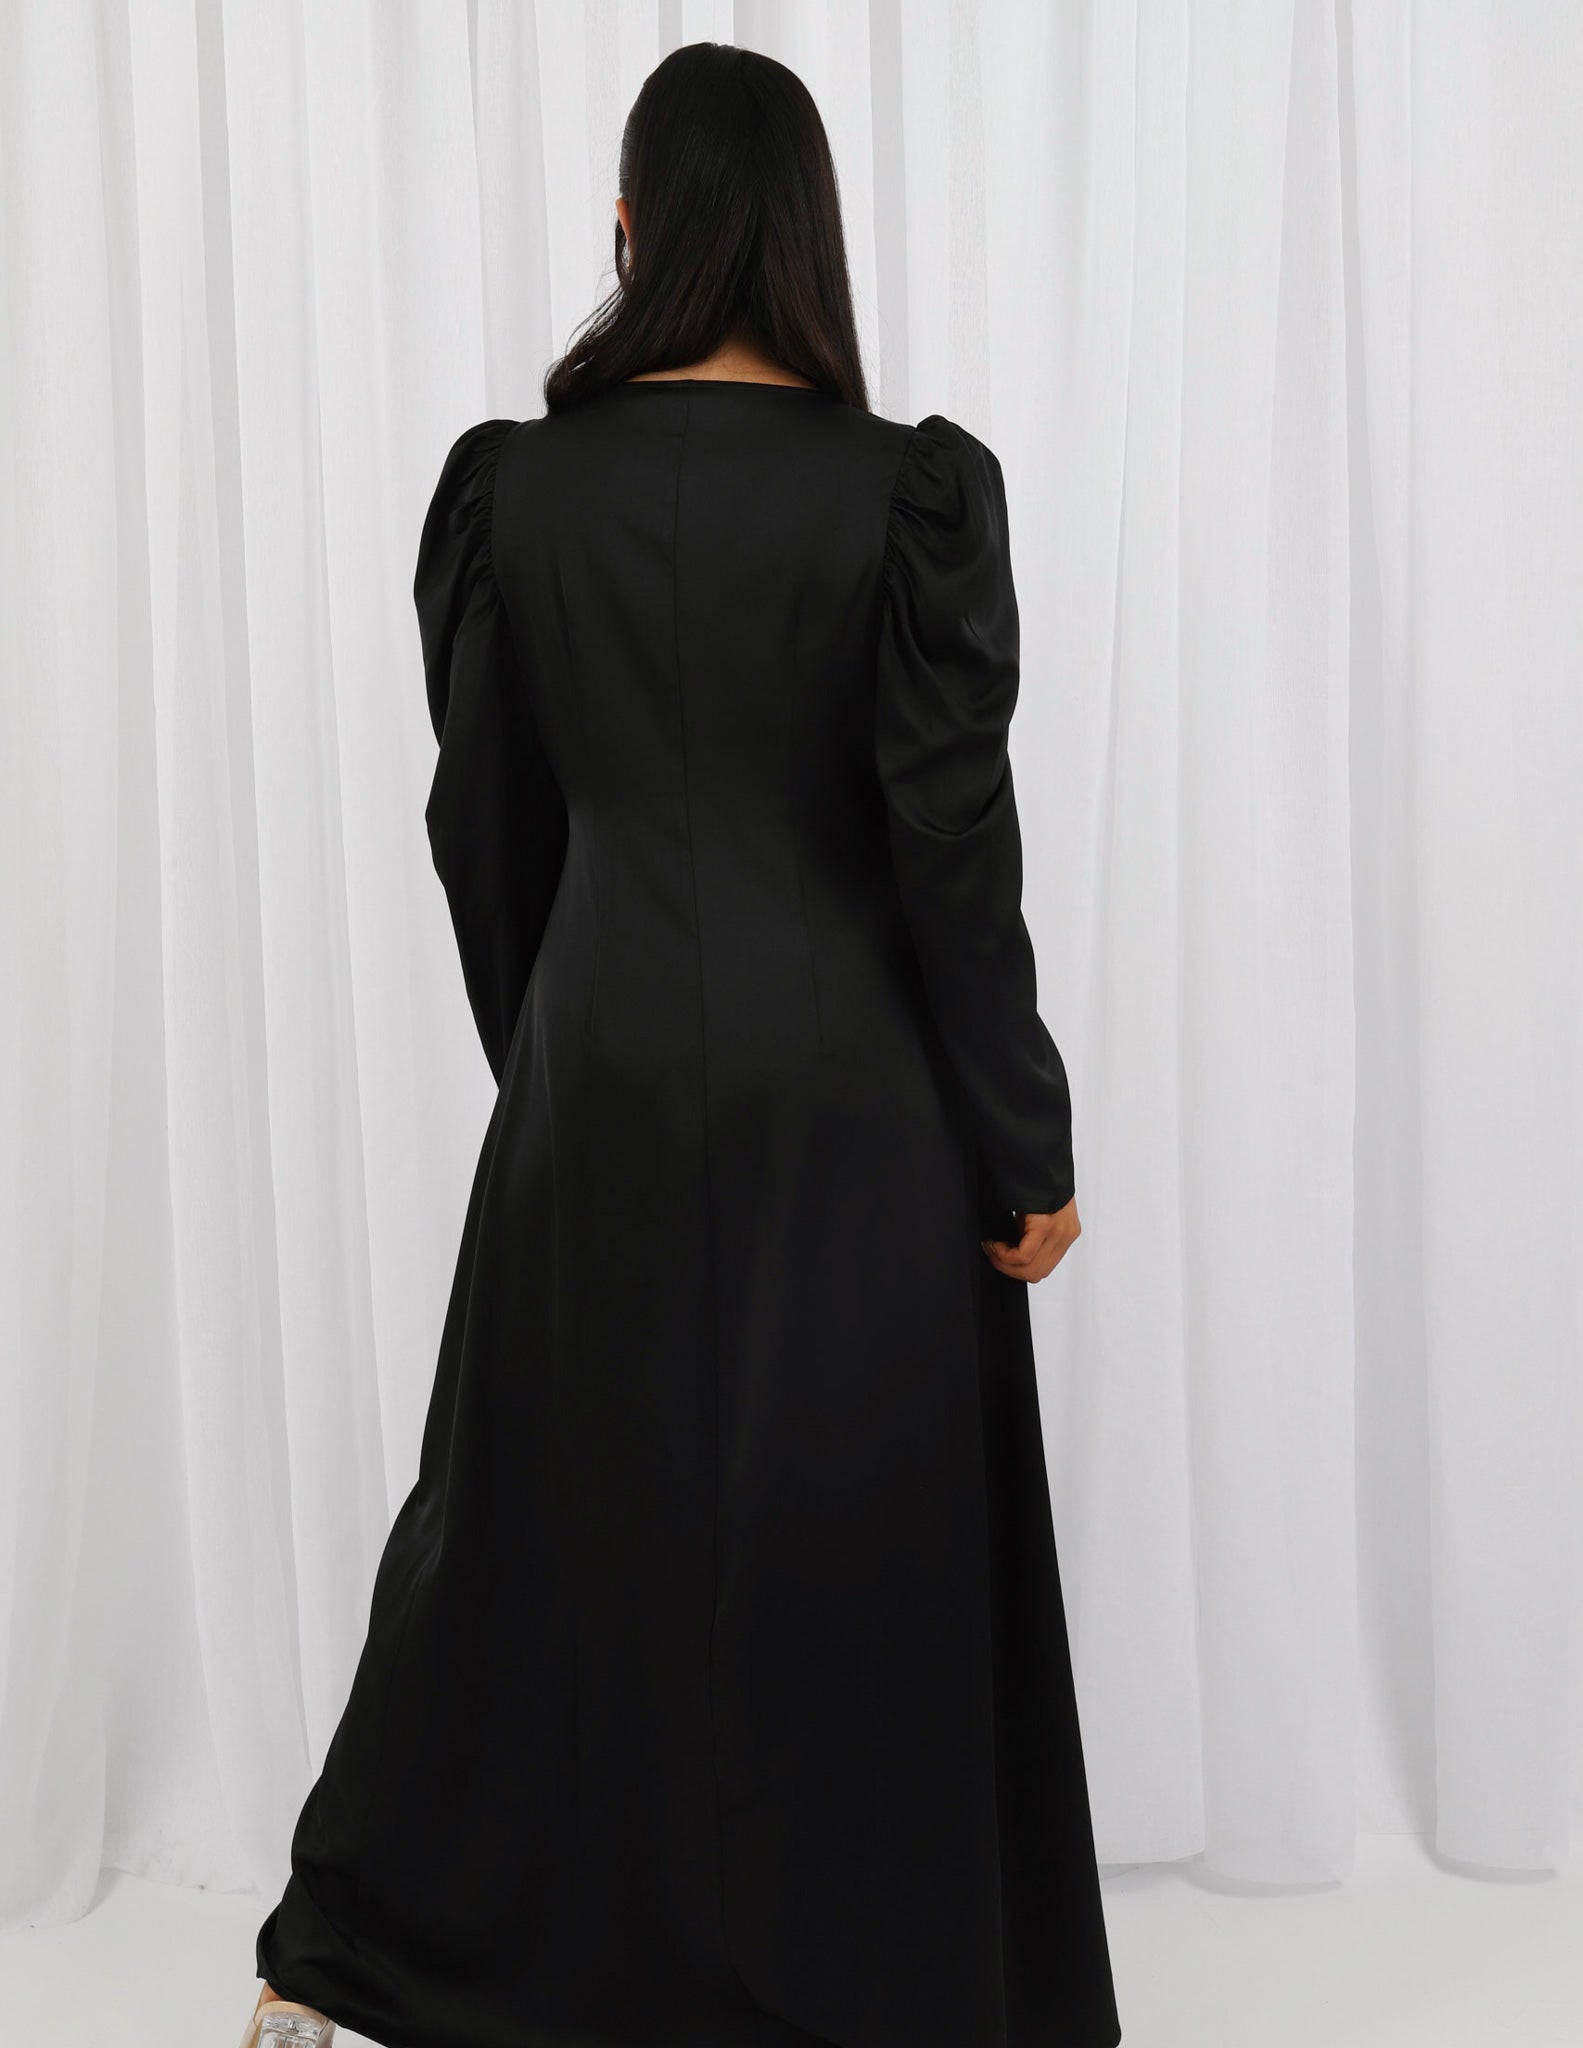 M7867Black-dress-abaya